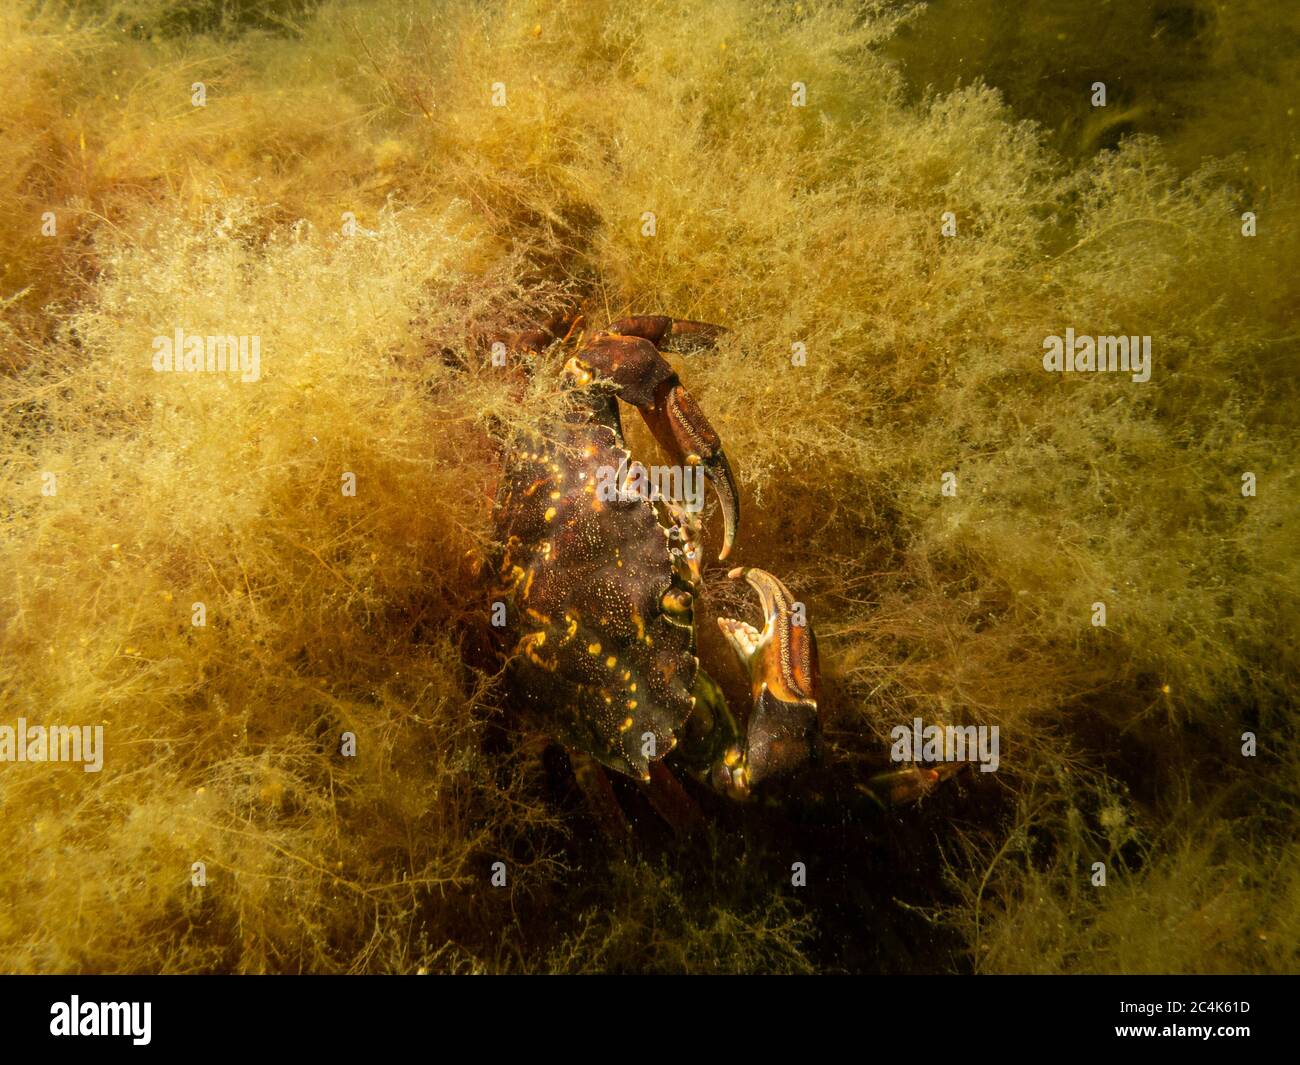 Un crabe photographié dans une plongée en bord de mer à on, Limhamn, Malmo. Plongée sous-marine à Oresund, l'eau entre la Suède et le Danemark. Photo de haute qualité Banque D'Images